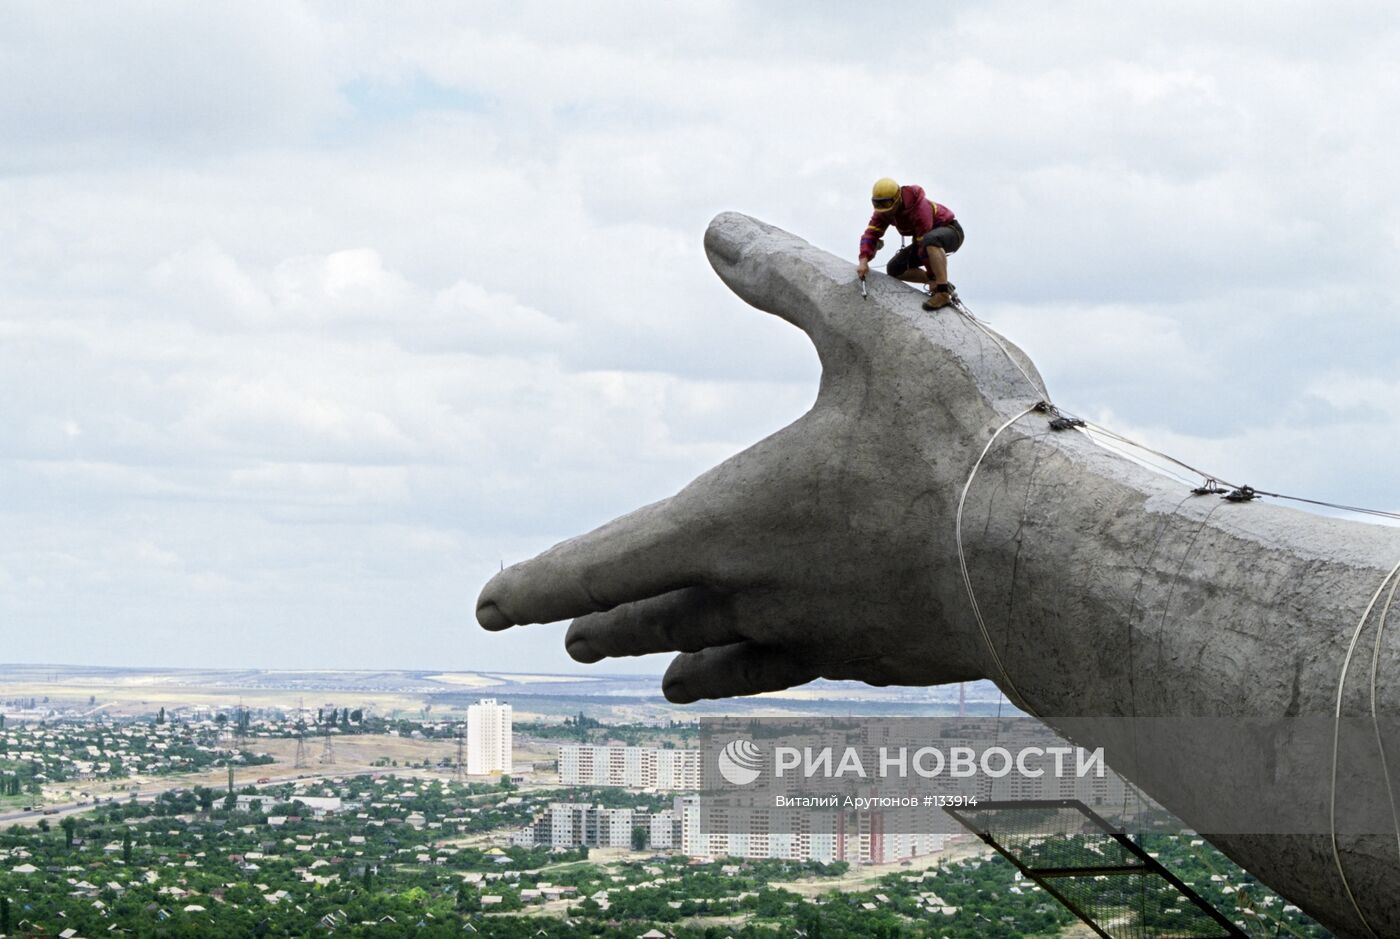 Ремонтные работы памятника "Родина-мать зовет" в Волгограде